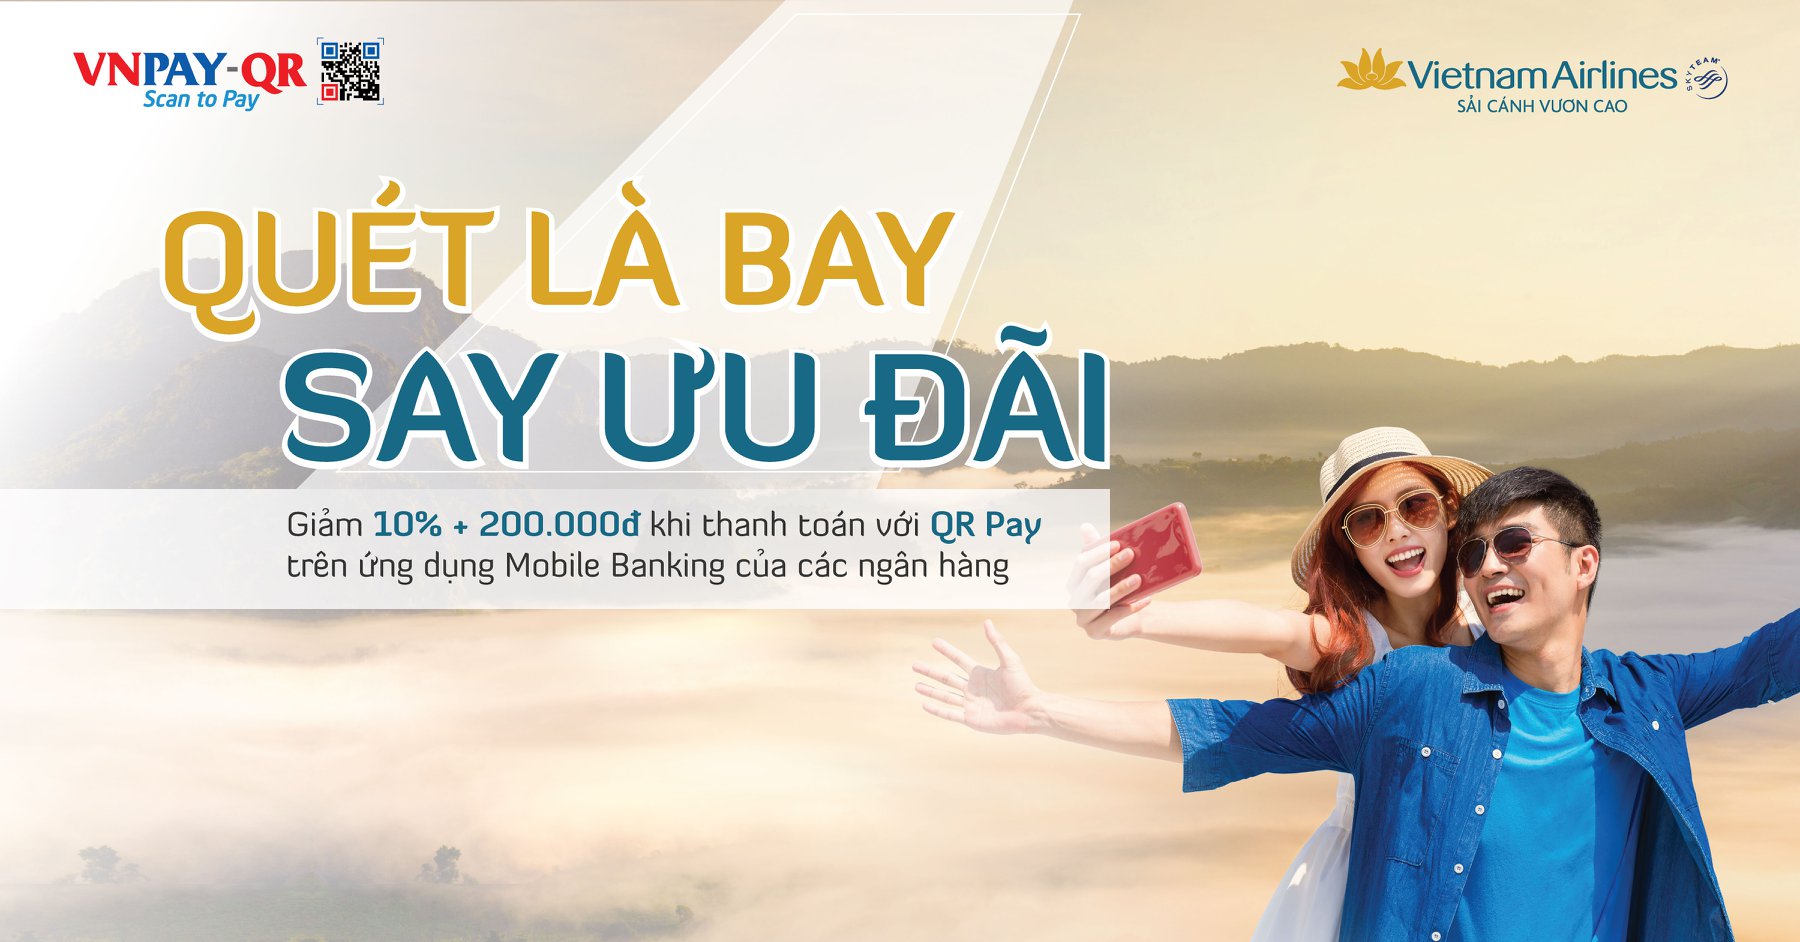 “Quét là bay – Say ưu đãi” - Khuyến mại hấp dẫn khi thanh toán vé Vietnam Airlines bằng QR Pay